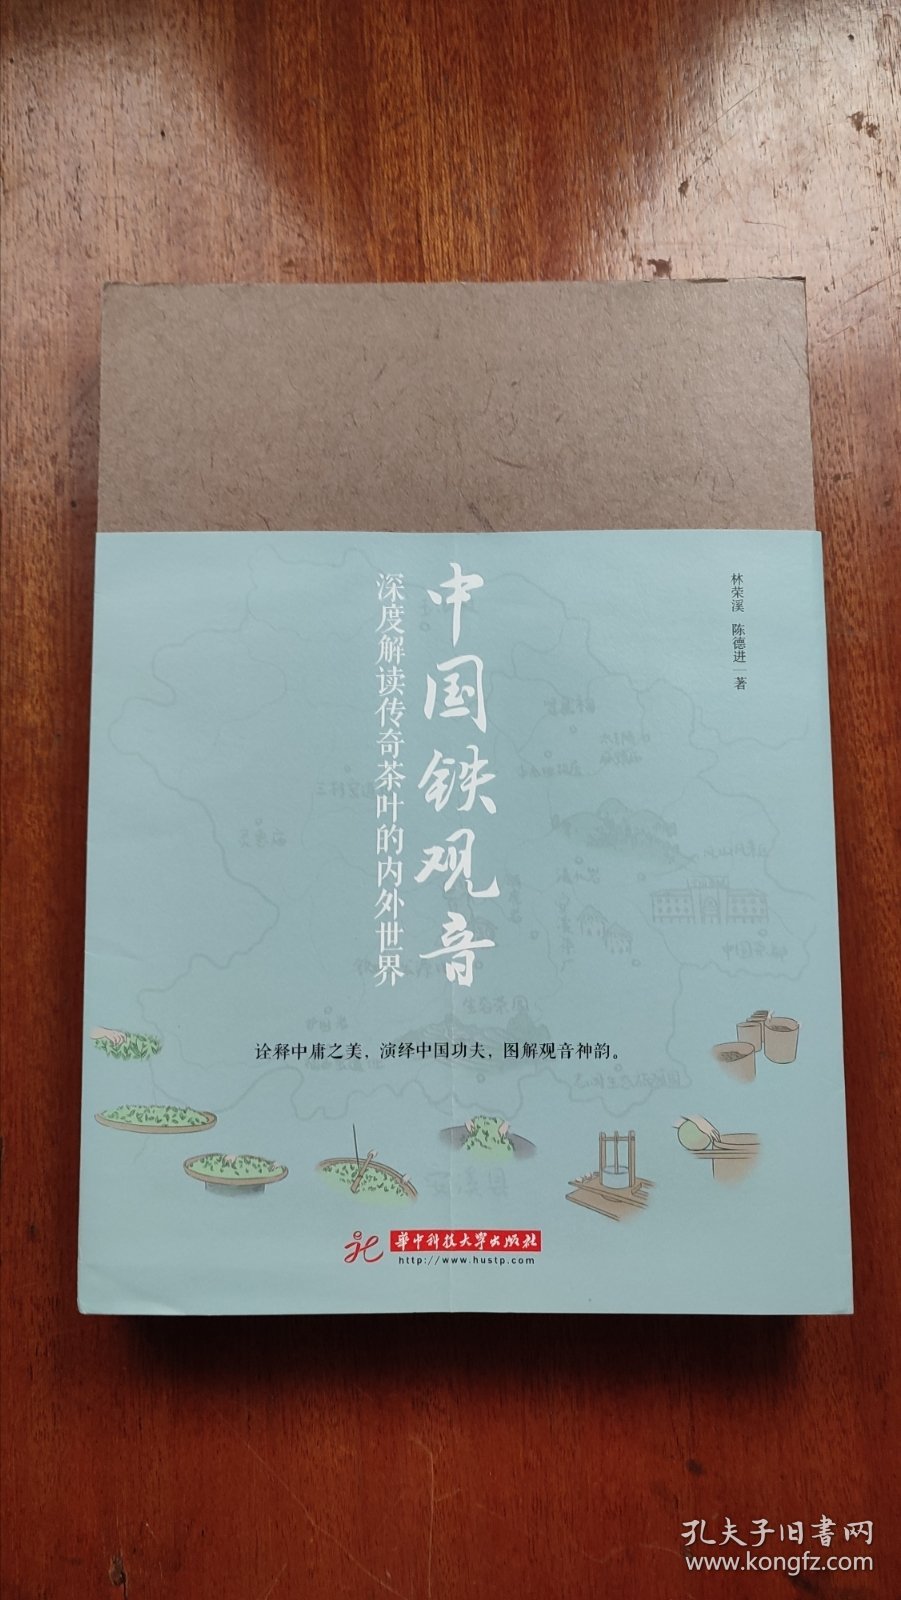 中国铁观音深度解读传奇茶叶的内外世界